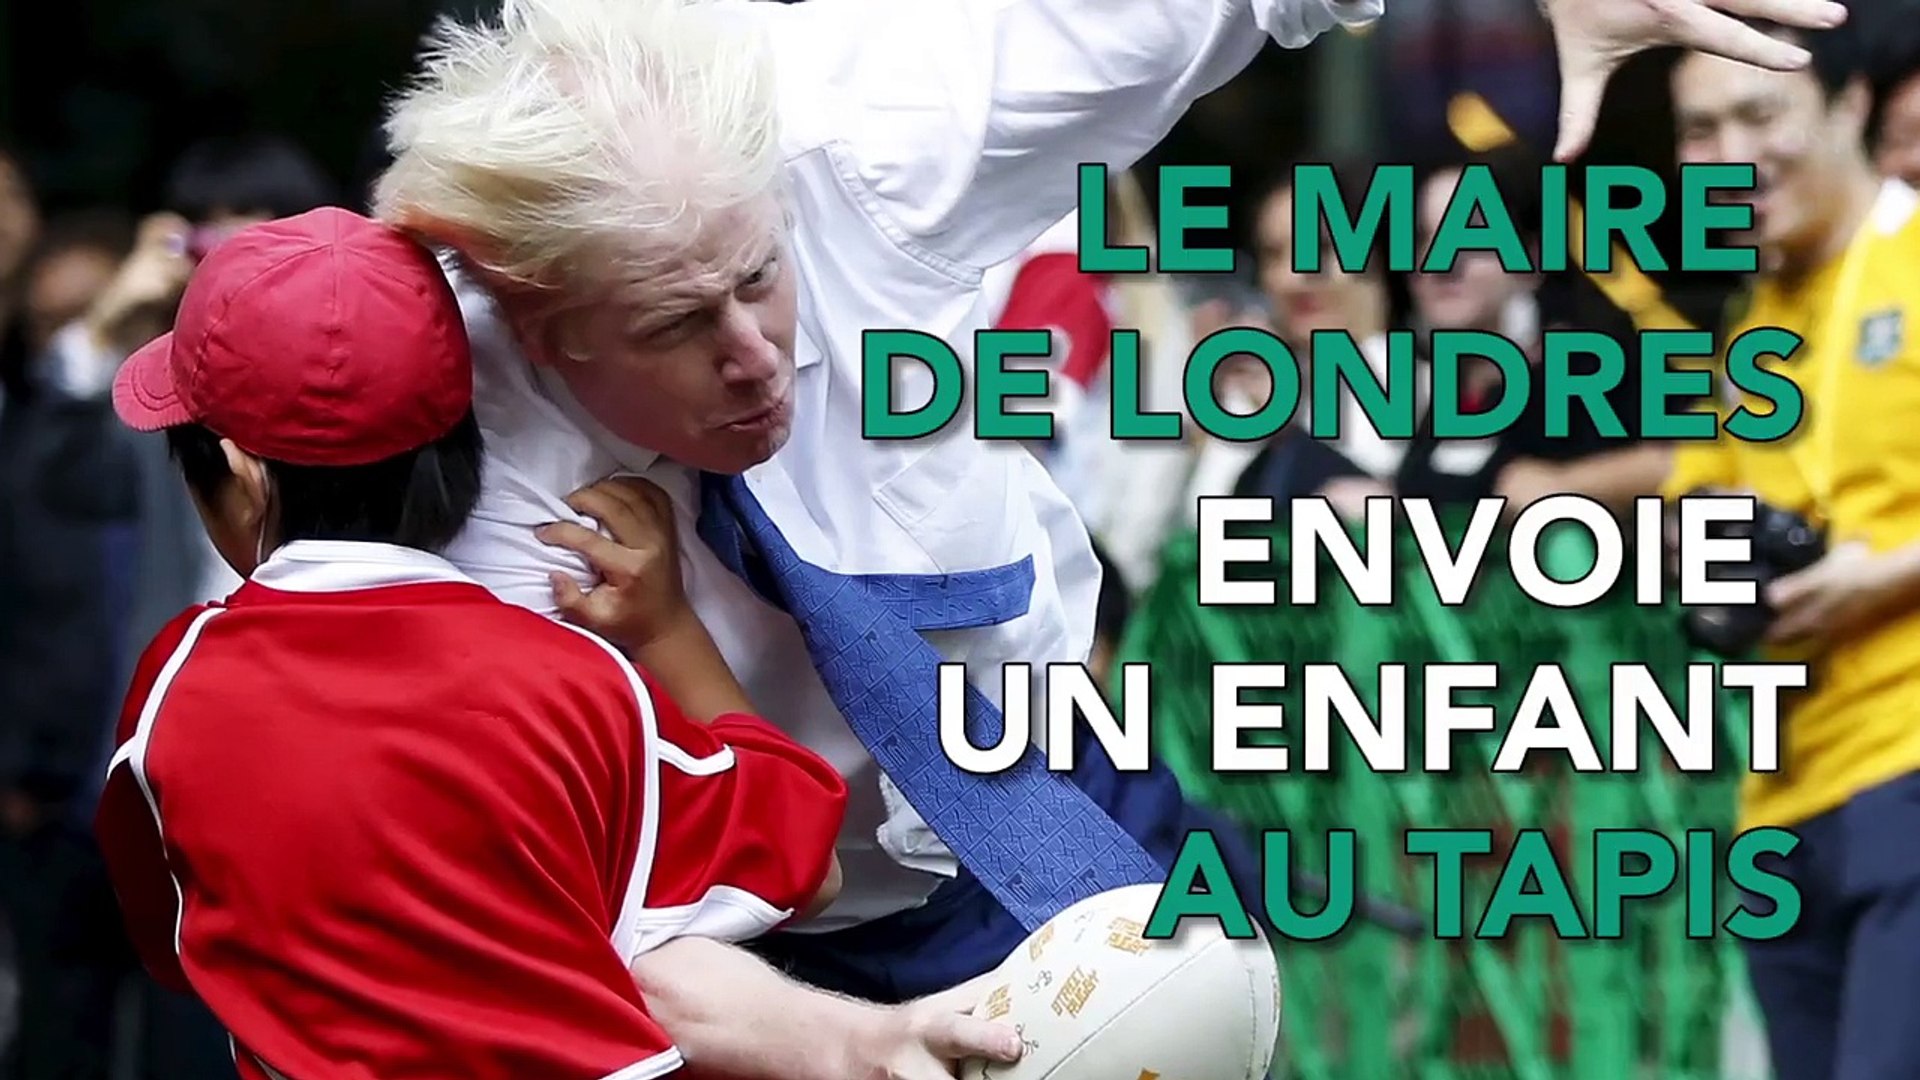 Le maire de Londres envoie au tapis un enfant de 10 ans - Vidéo Dailymotion